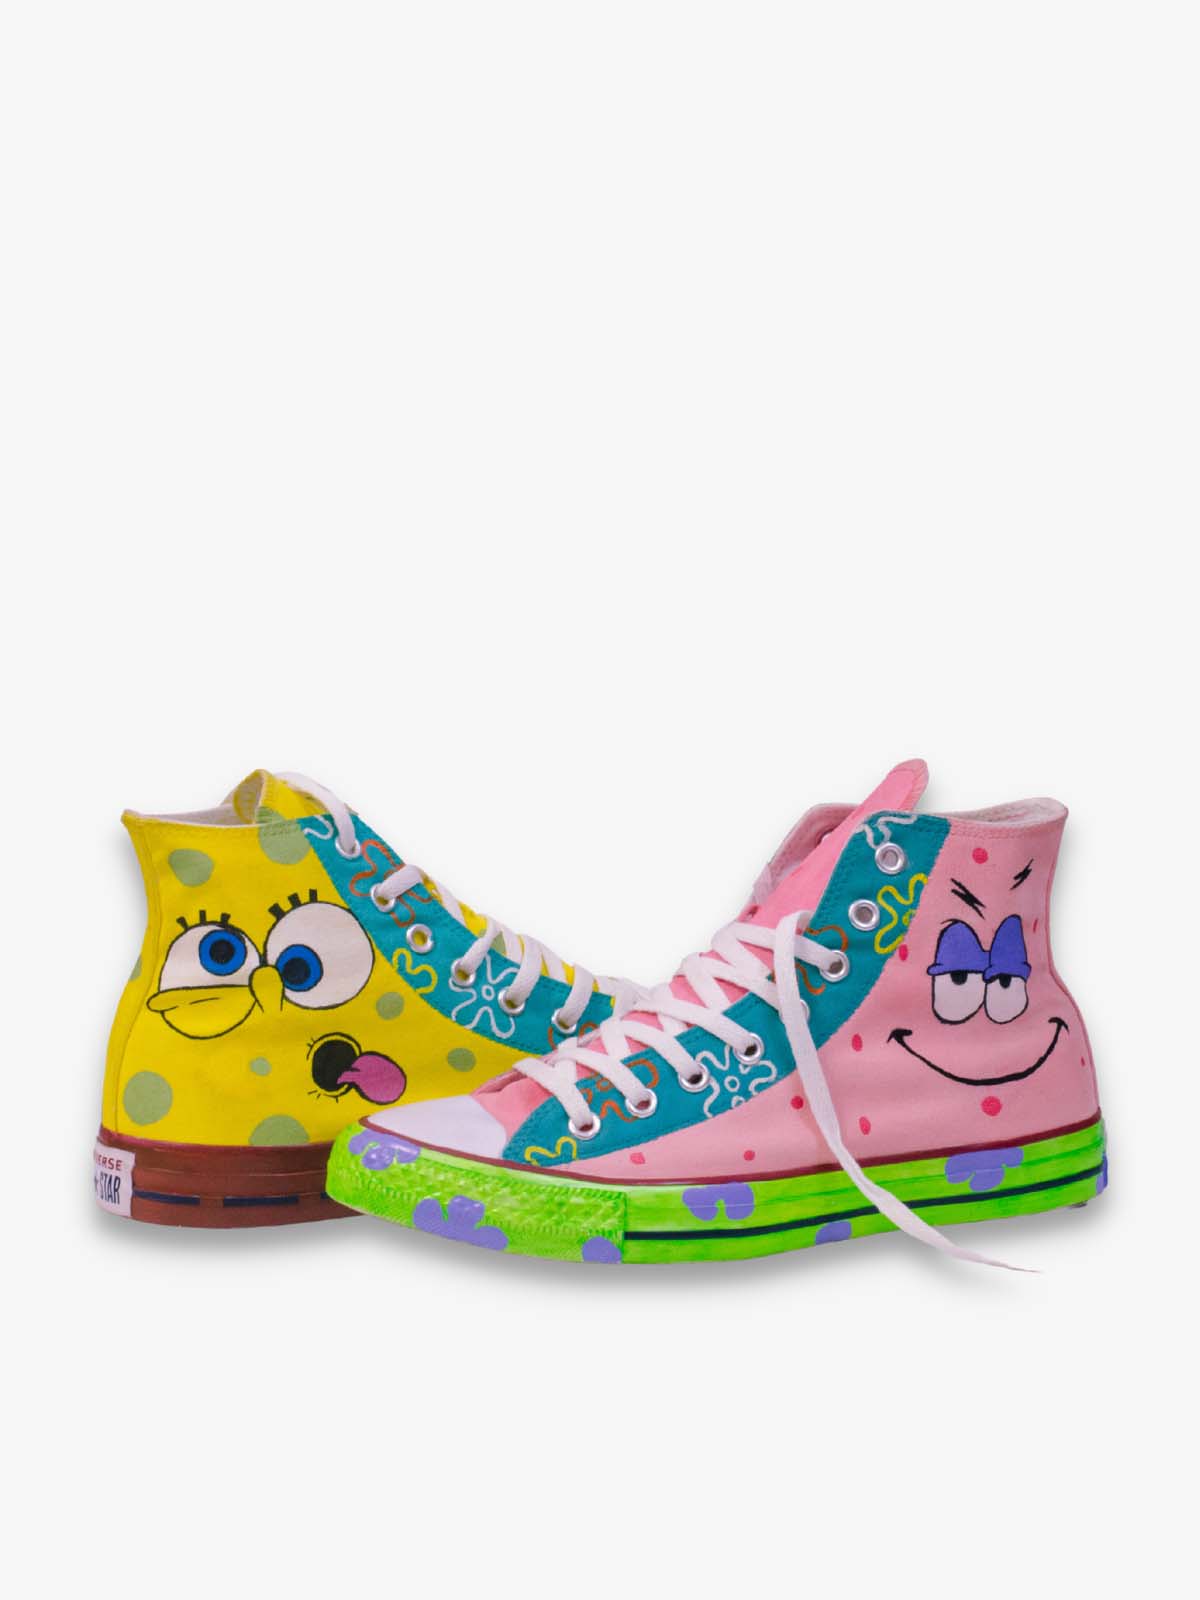 Spongebob Custom Converse